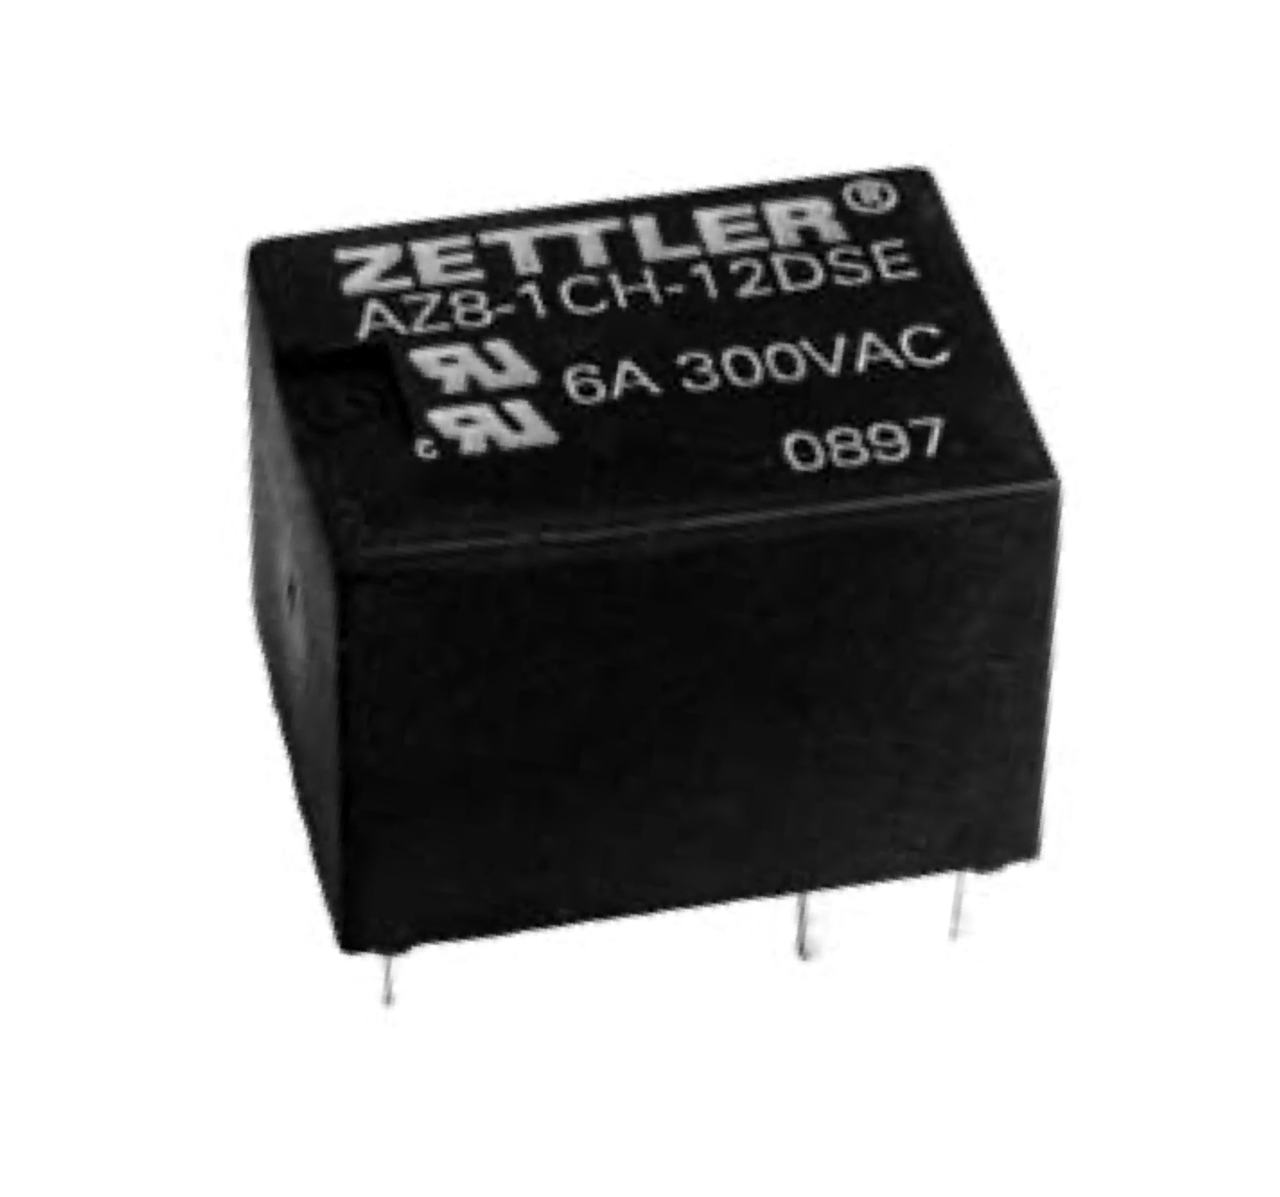 American Zettler AZ8-1C-9DS Power Relay